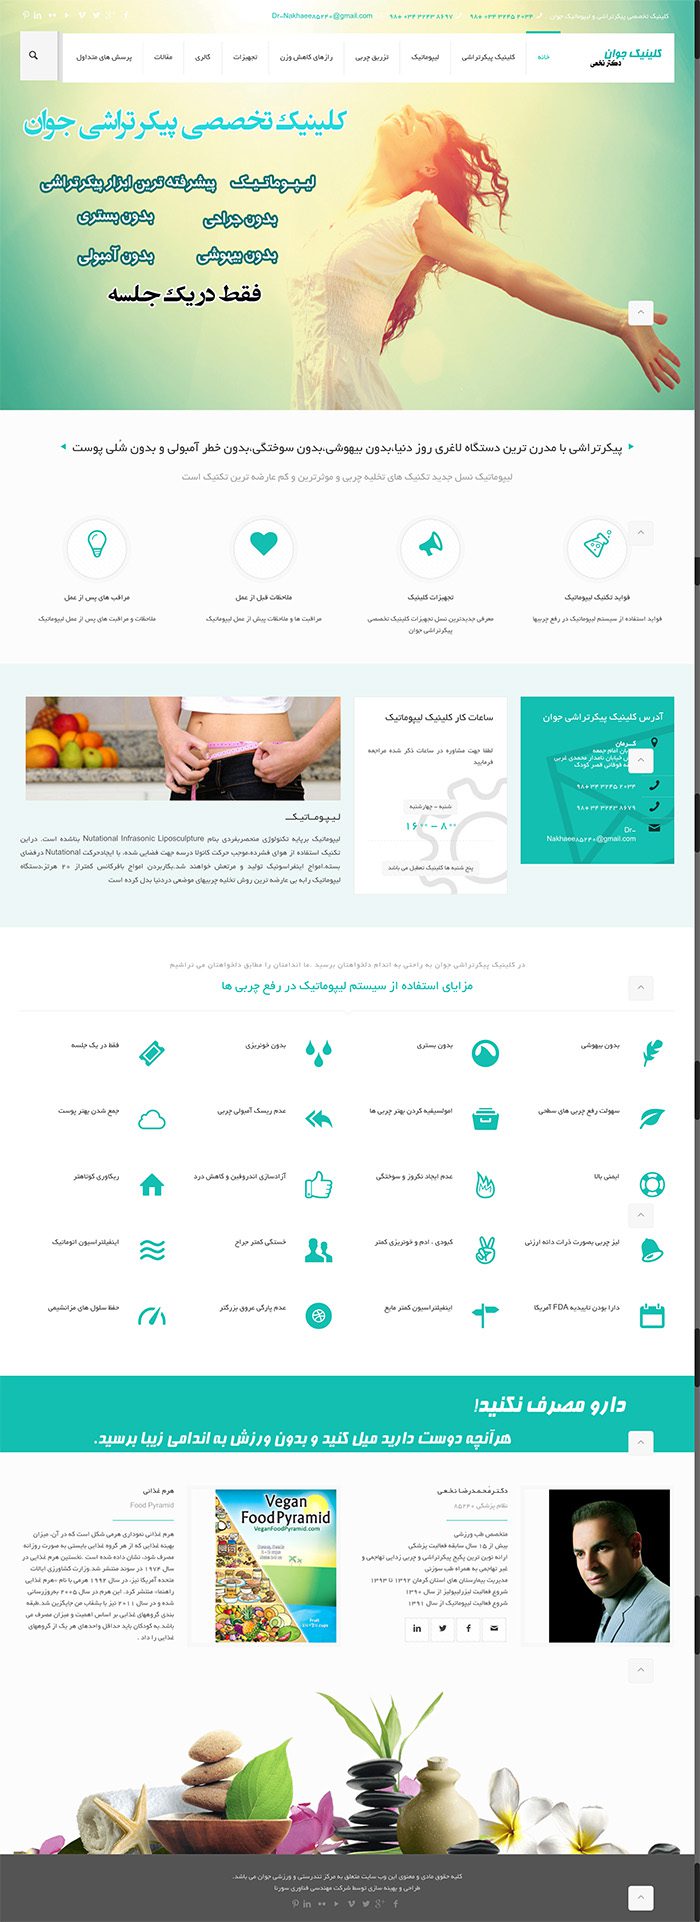 طراحی سایت دکتر محمدرضا نخعی توسط شرکت طراحی سایت سورنا در کرمان